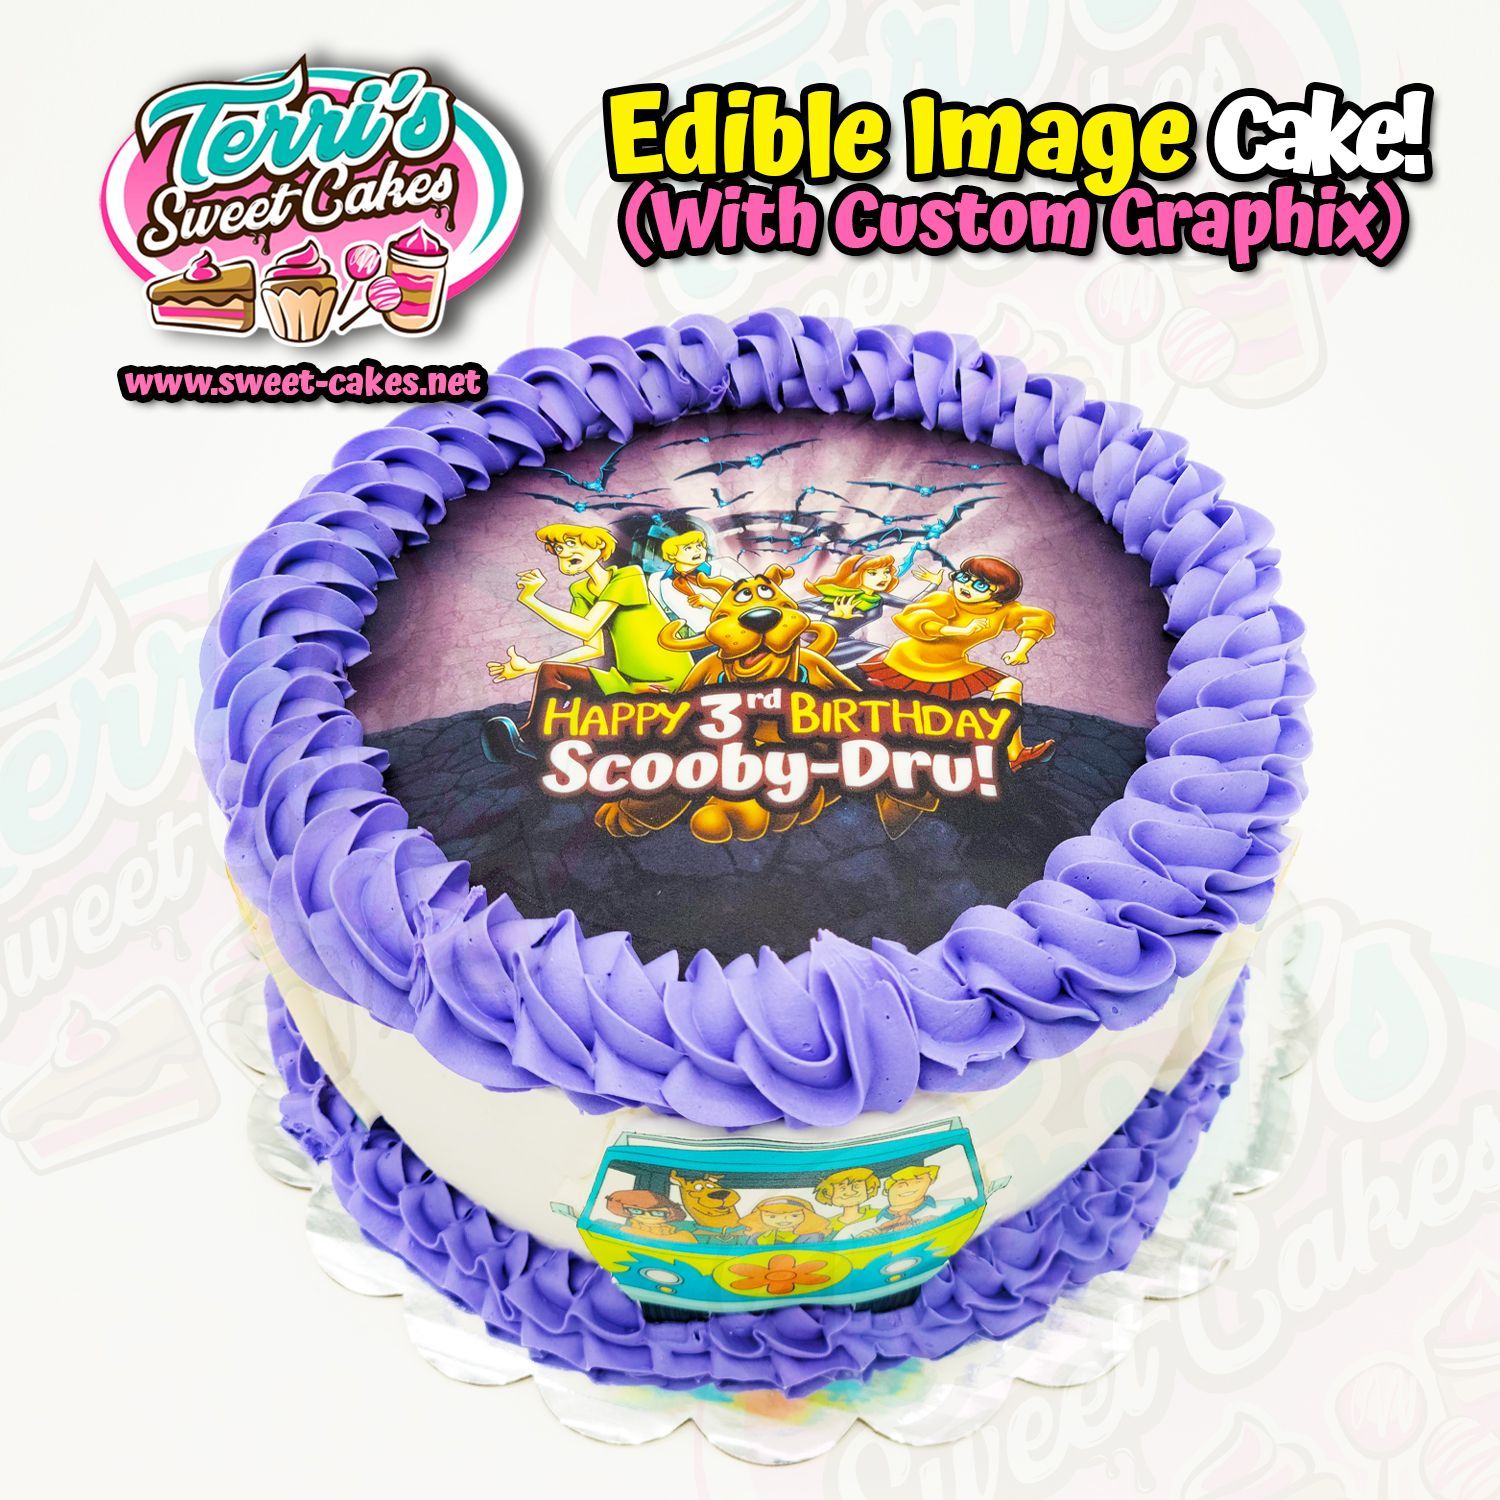 Scooby Doo Birthday Cake by Terri's Sweet Cakes!